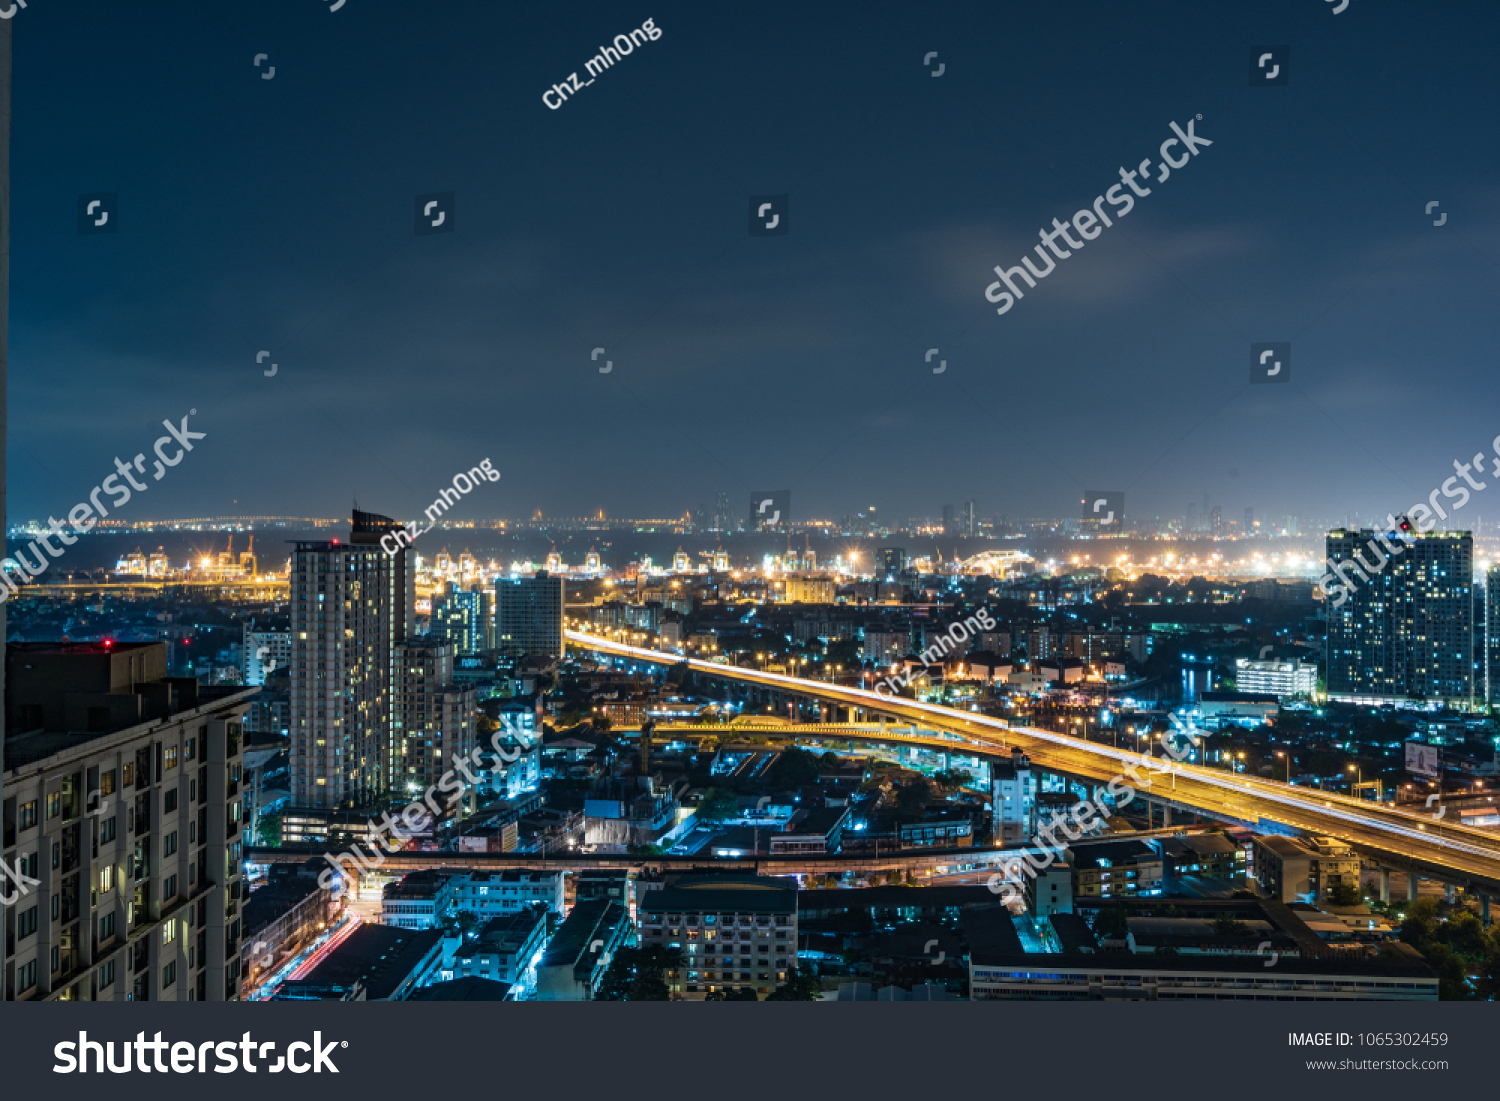 City night view shot. beautiful downtown night light, urban lifestyle #1065302459